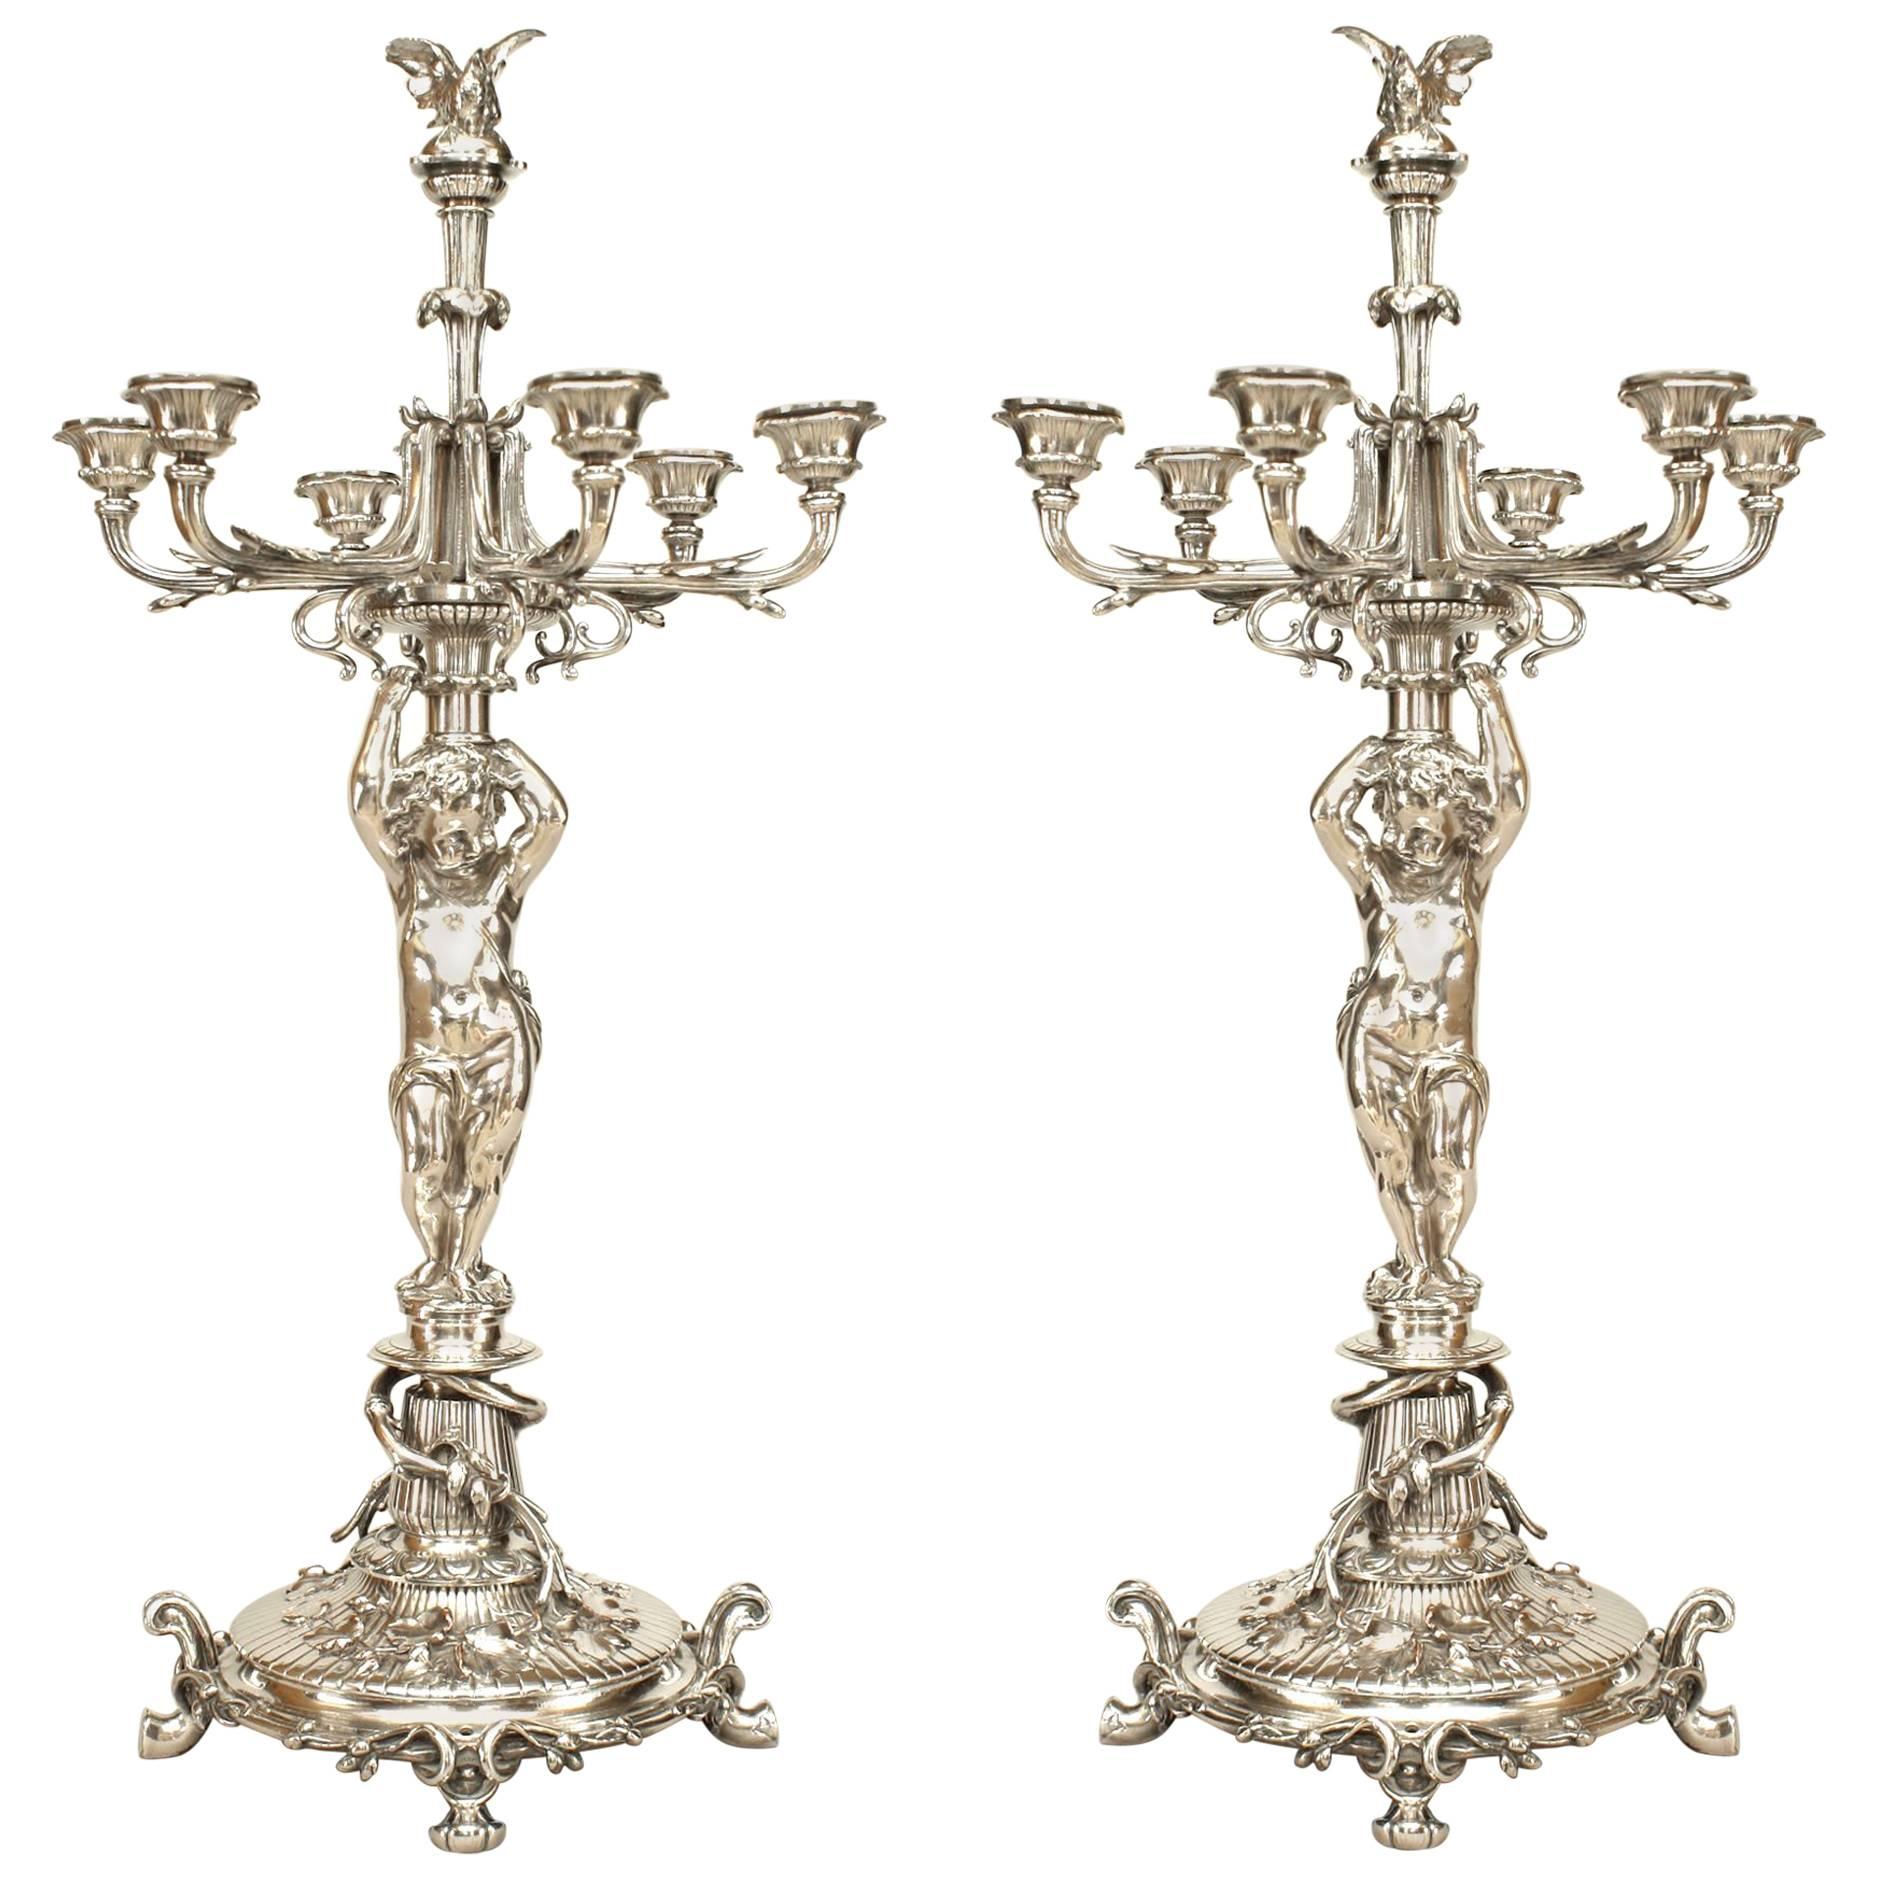 Paire de candélabres Cupidon en métal argenté de l'époque victorienne française